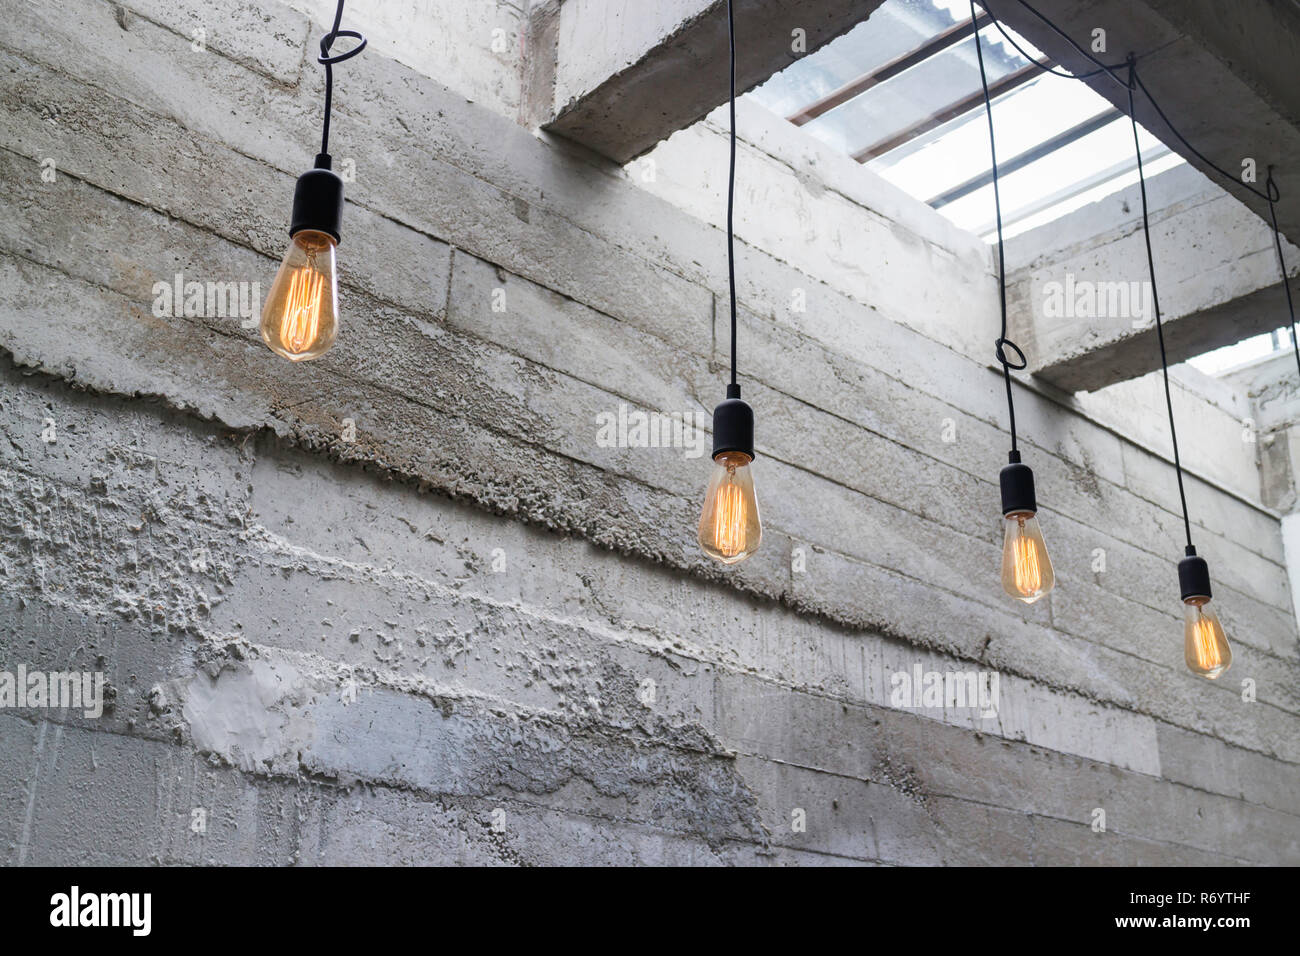 Lampen von der Decke hängend Stockfotografie - Alamy